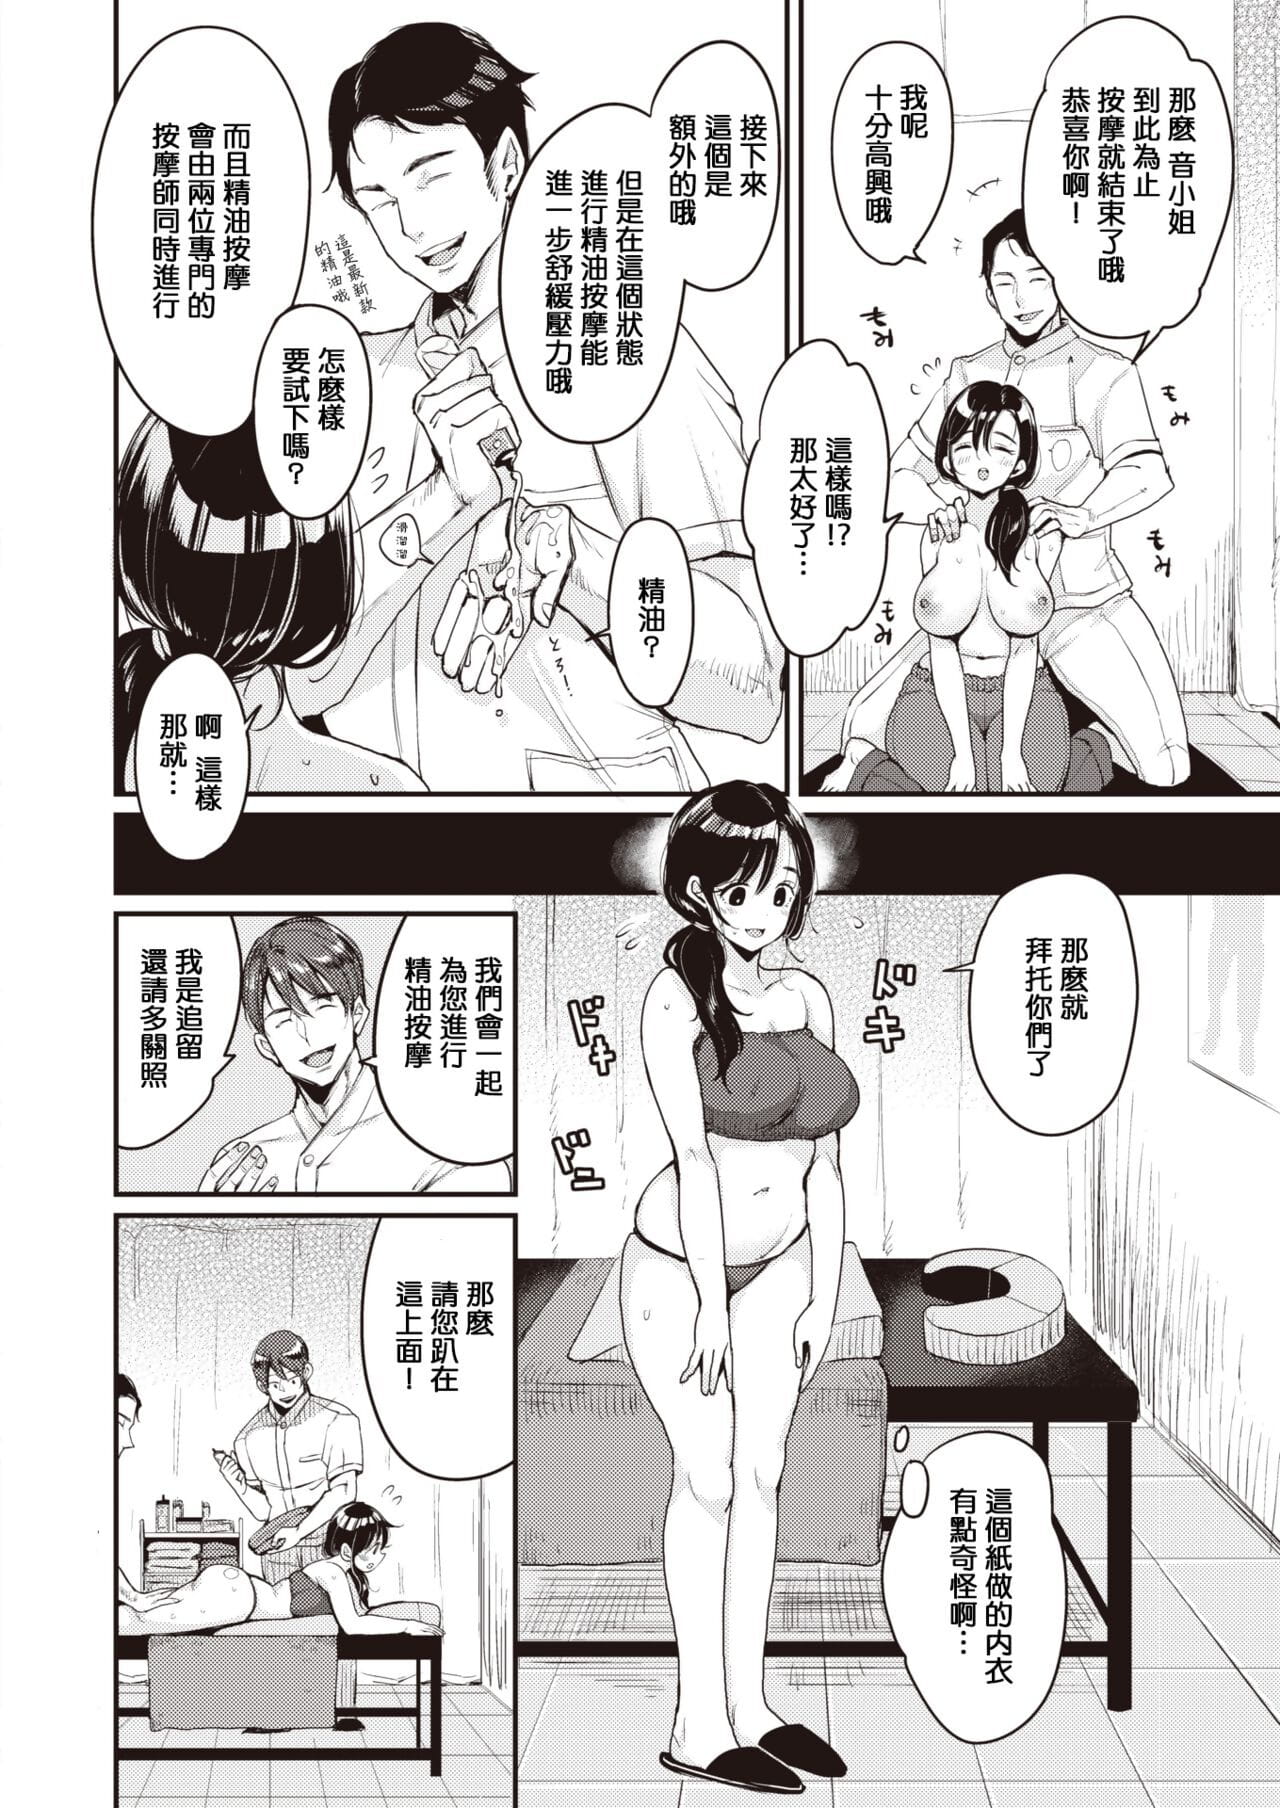 nadeshiko san wa no!tte ienai massage kip page 1